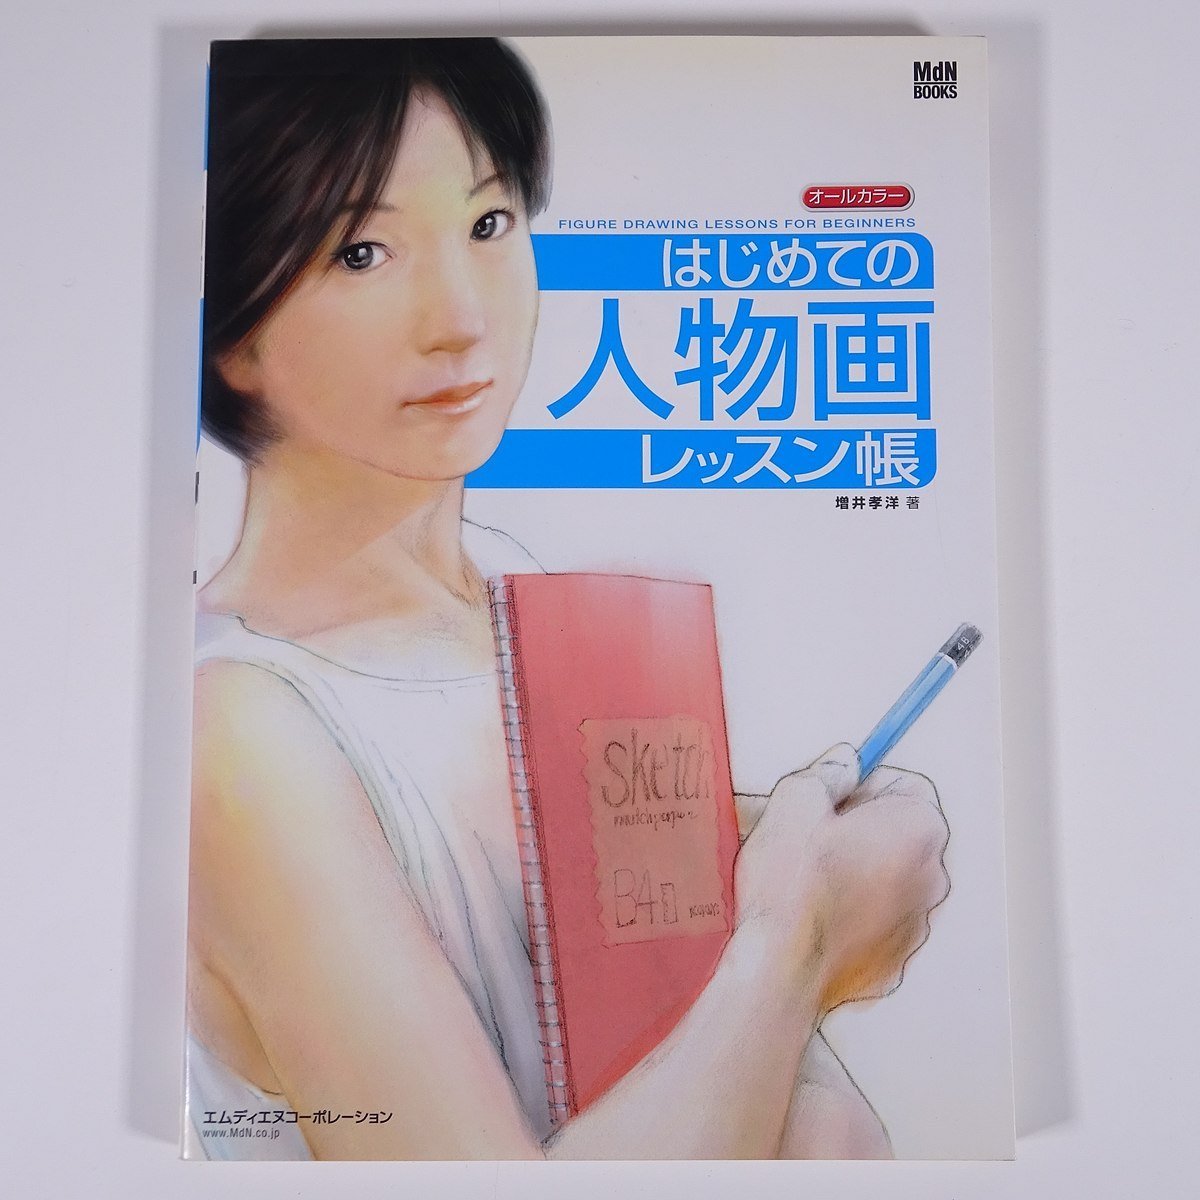 첫 번째 그림 그리기 수업 도서 모든 색상 Takahiro Masui MdN 2003 대형 도서 아트 아트 페인팅 일러스트레이션 드로잉 기술 도서, 미술, 오락, 그림, 기술서